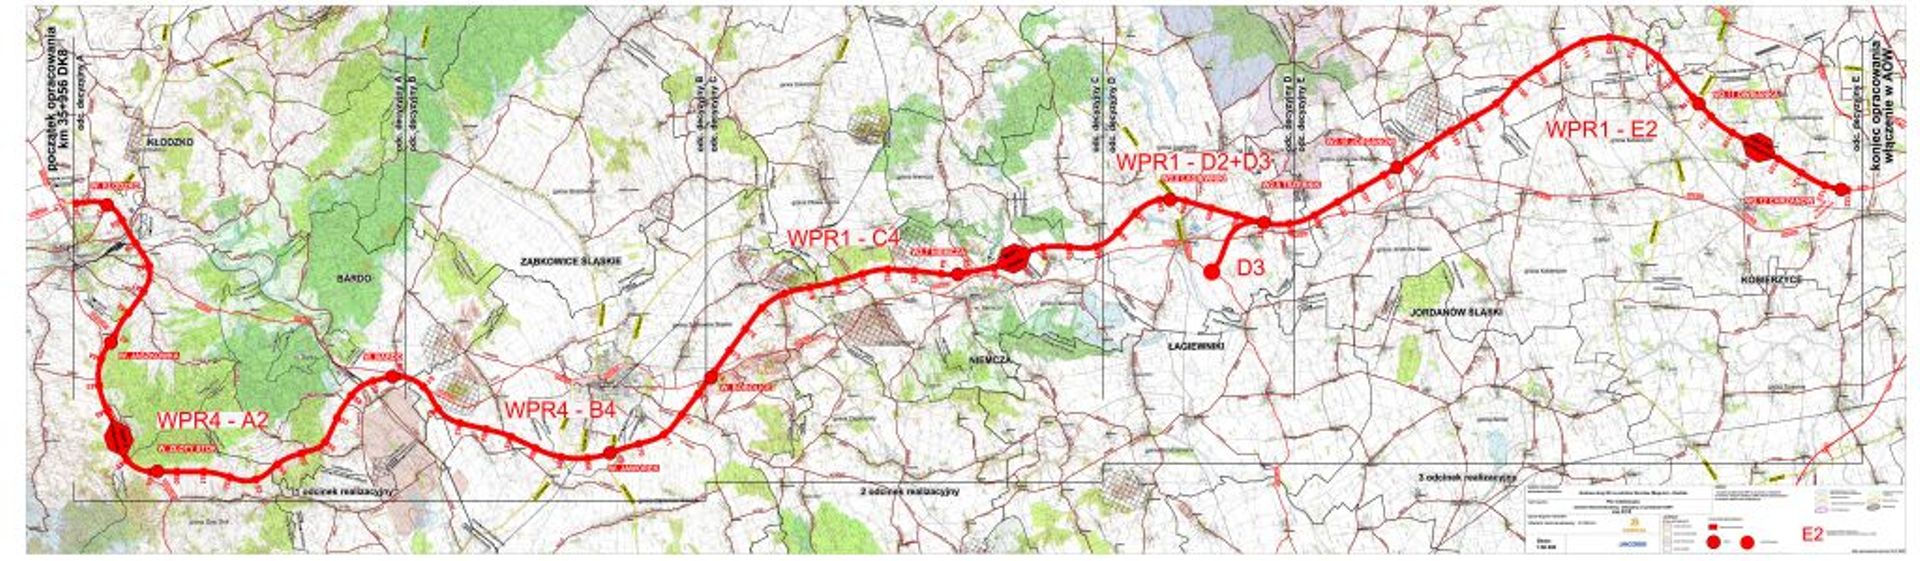 Dolny Śląsk: Wybrano rekomendowany wariant przebiegu trasy S8 z Wrocławia do Kłodzka